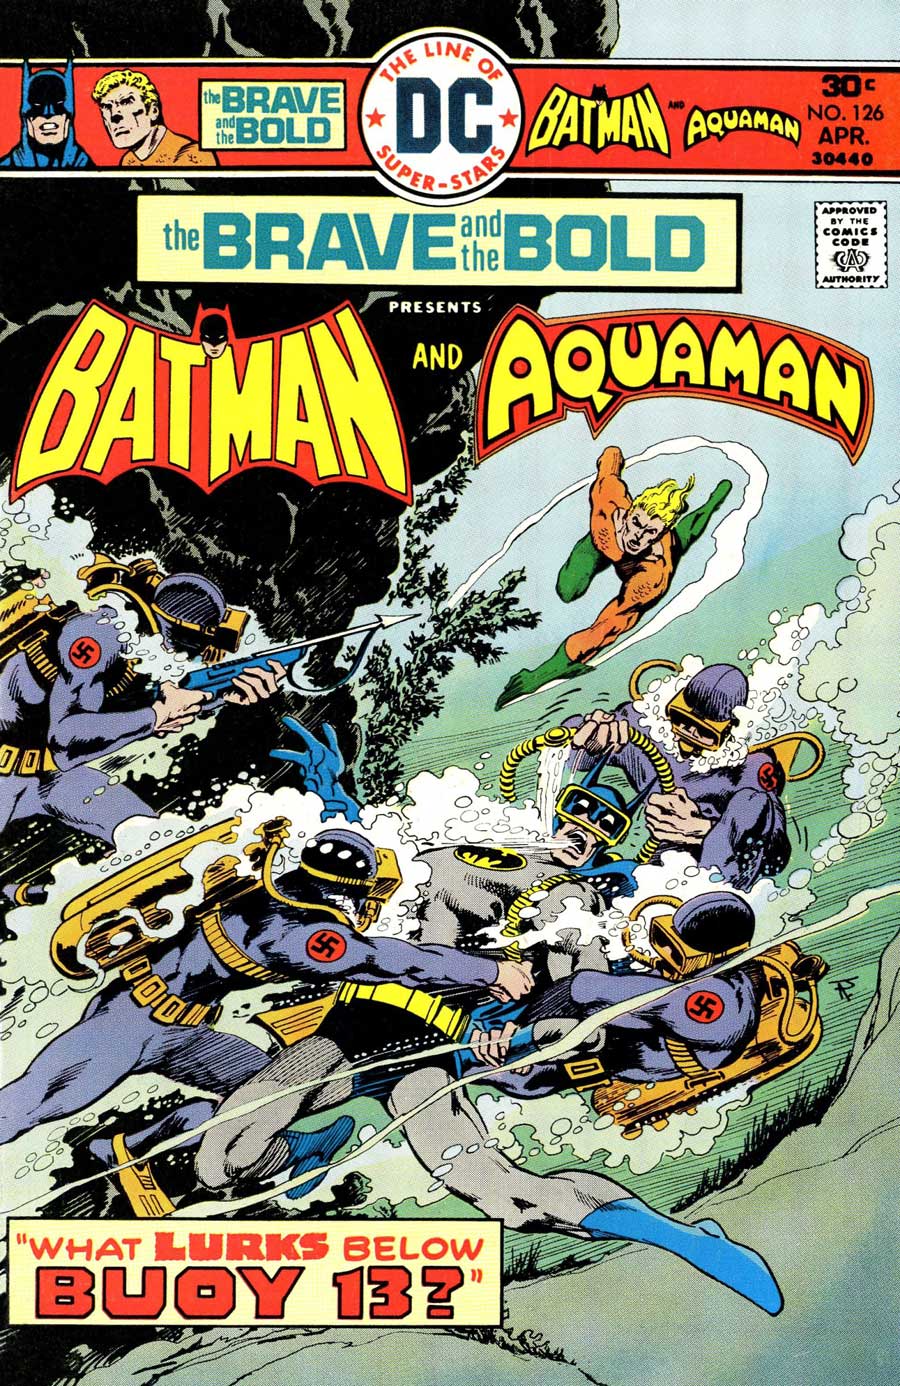 Brave and the Bold #126 featuring Batman and Aquaman by Bob Haney, Jim Aparo and John Calnan